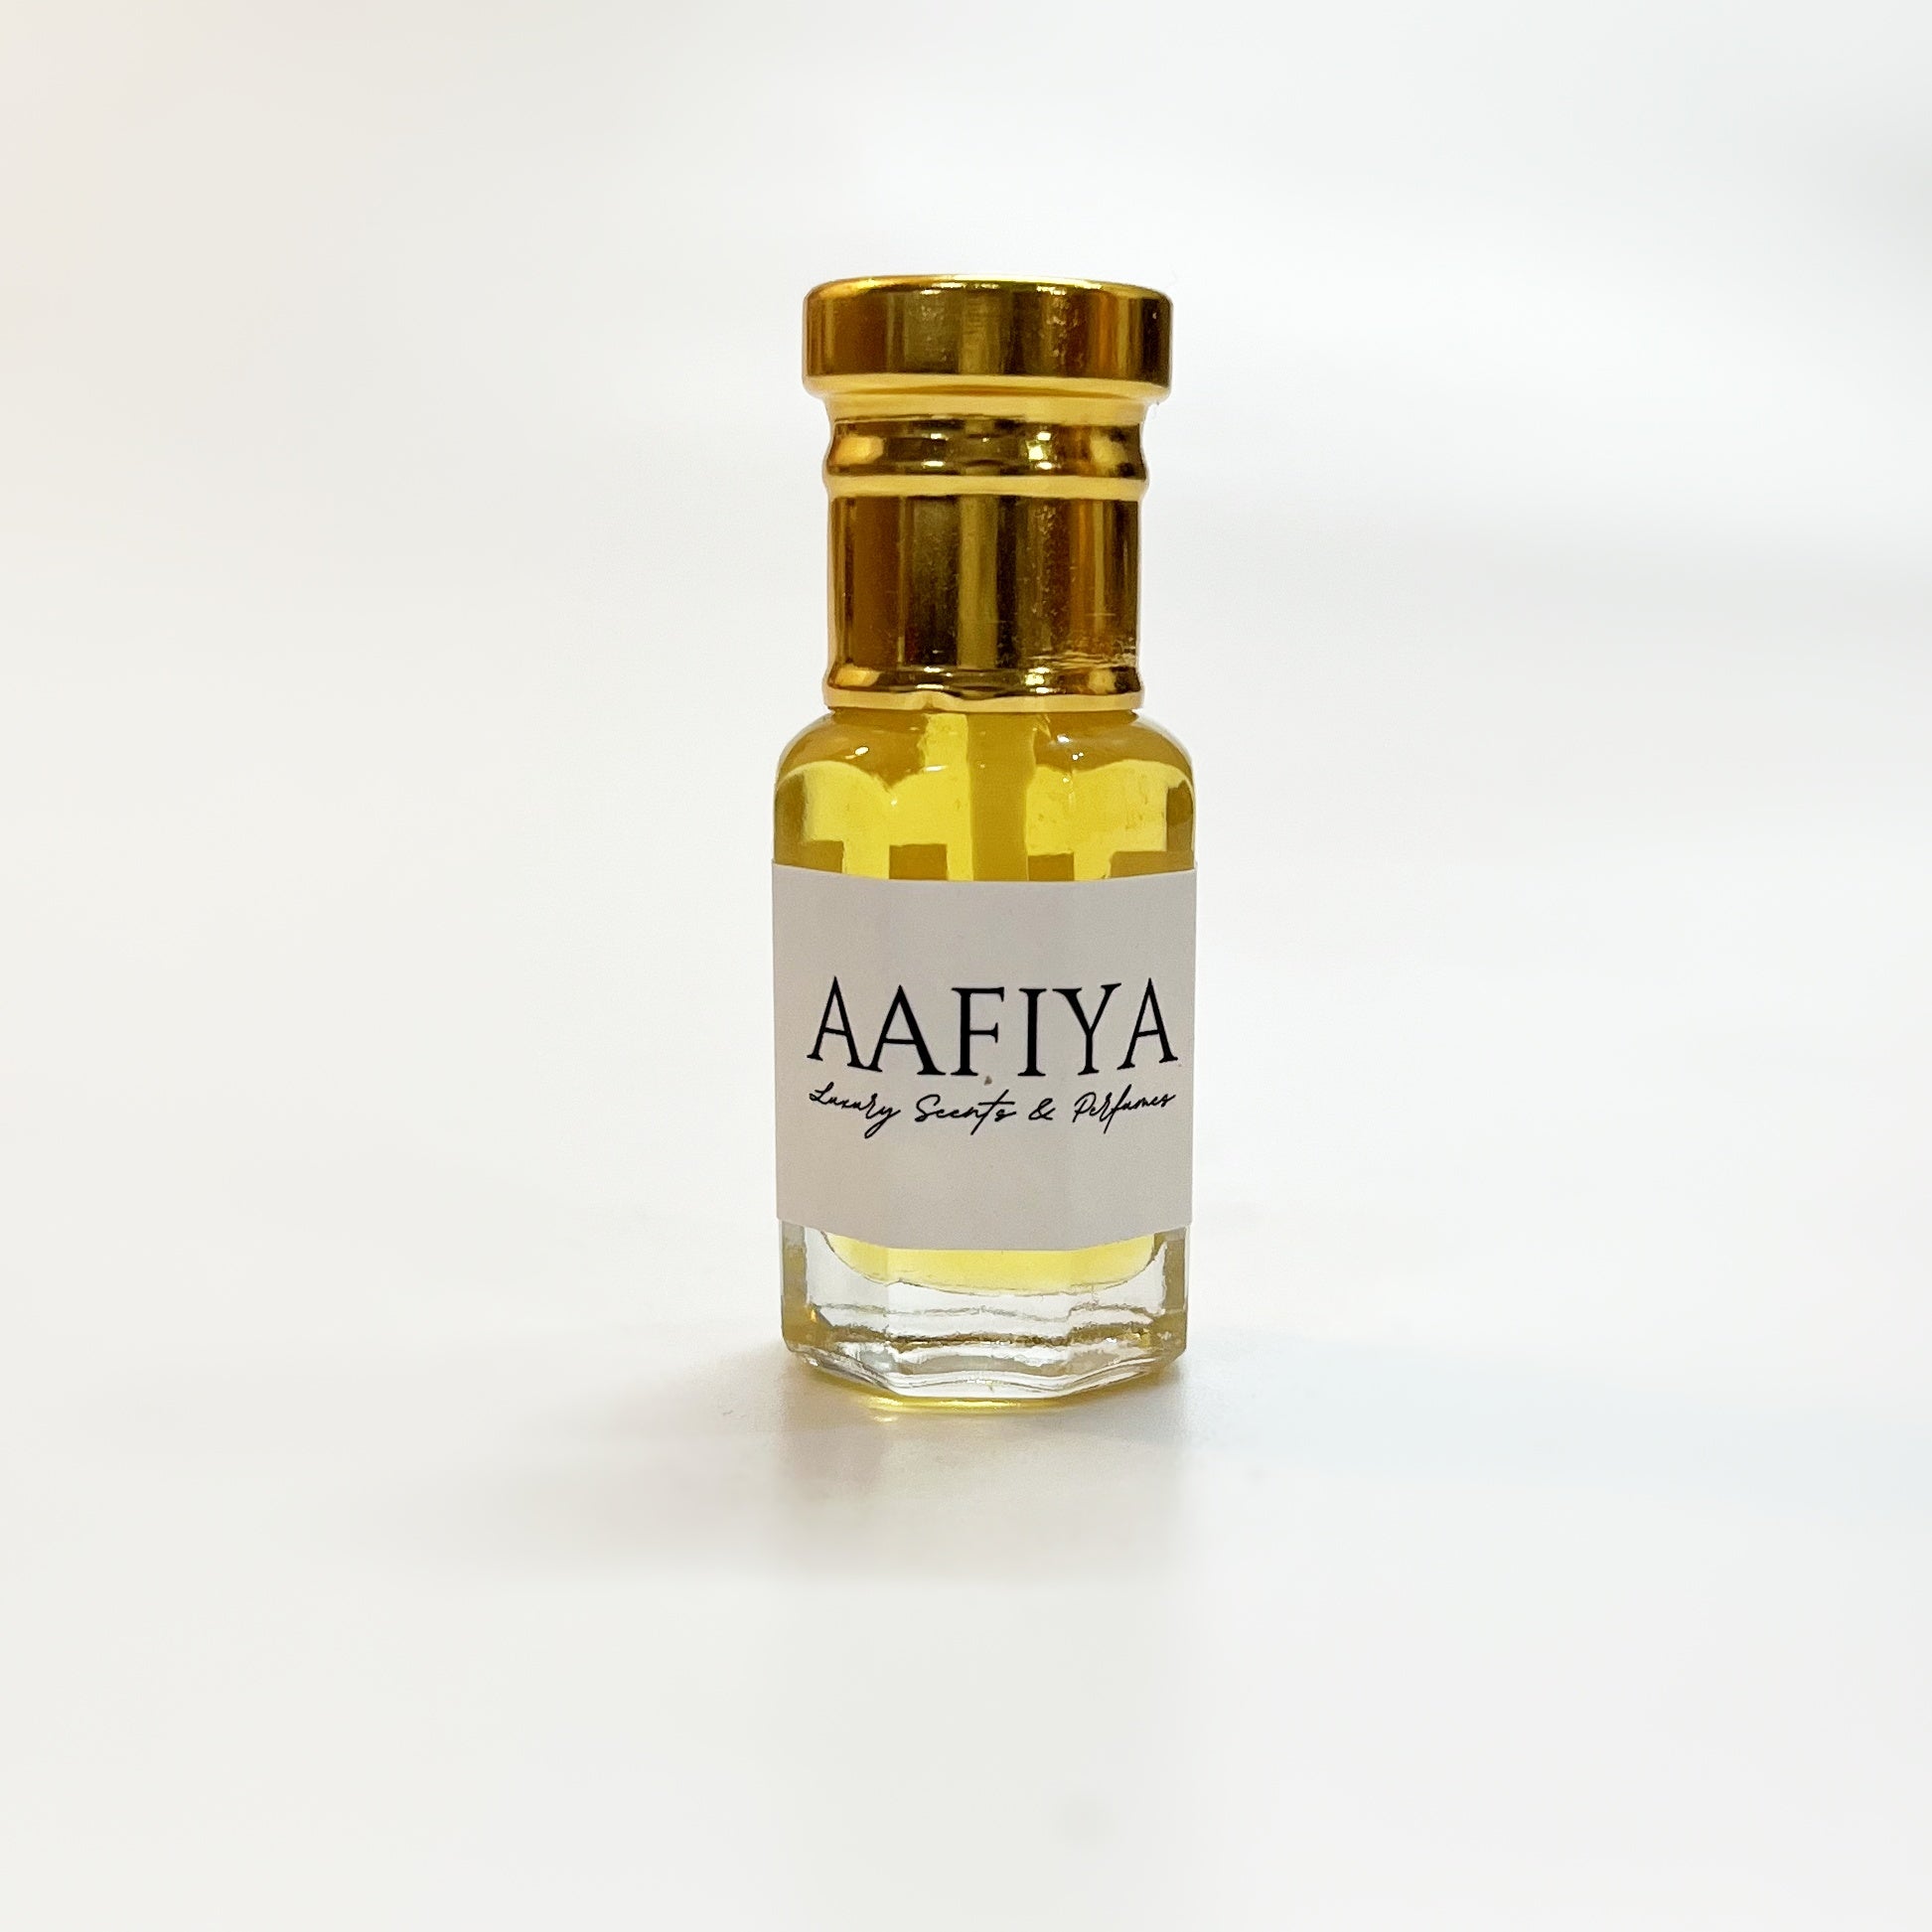 Royal Santal Aafiya Luxury Scents & Perfumes